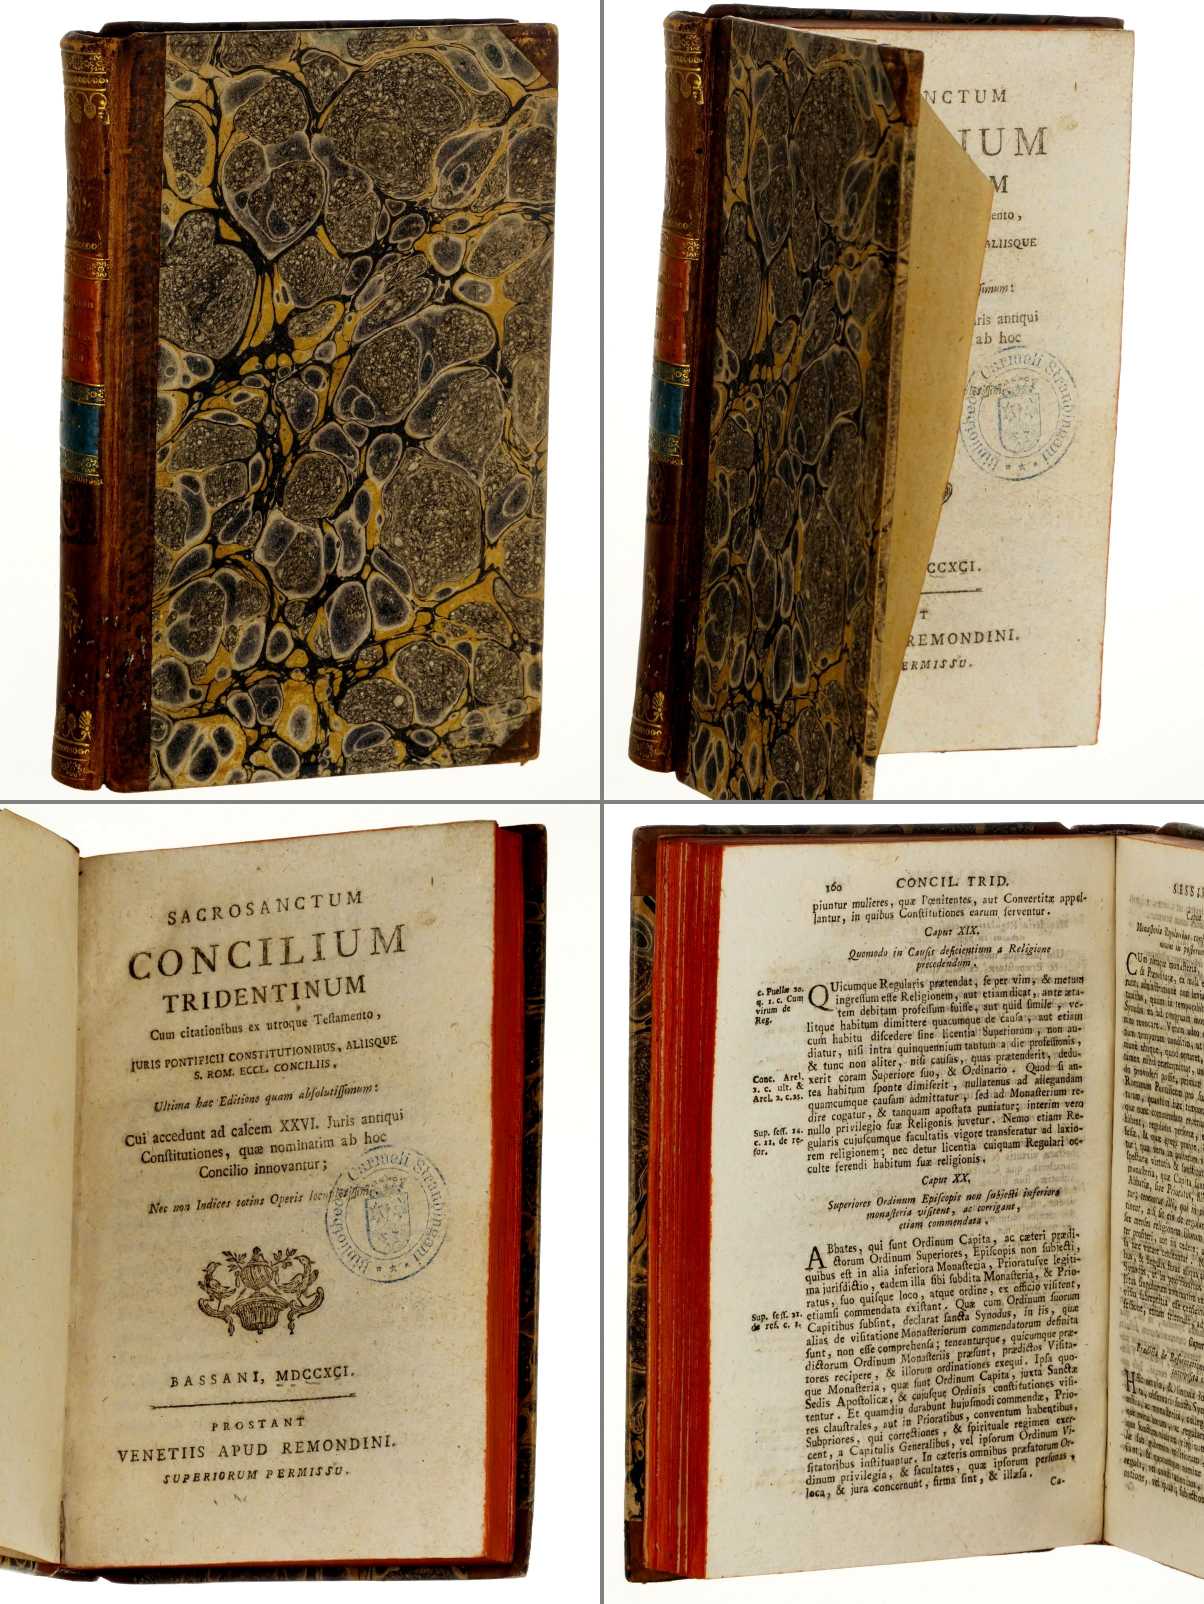   Sacrosanctum Concilium Tridentinum. Cum citationibus ex utroque Testamento Juris Pontificii Constitutionibus, aliisque S. Rom. Eccl. Conciliis. 